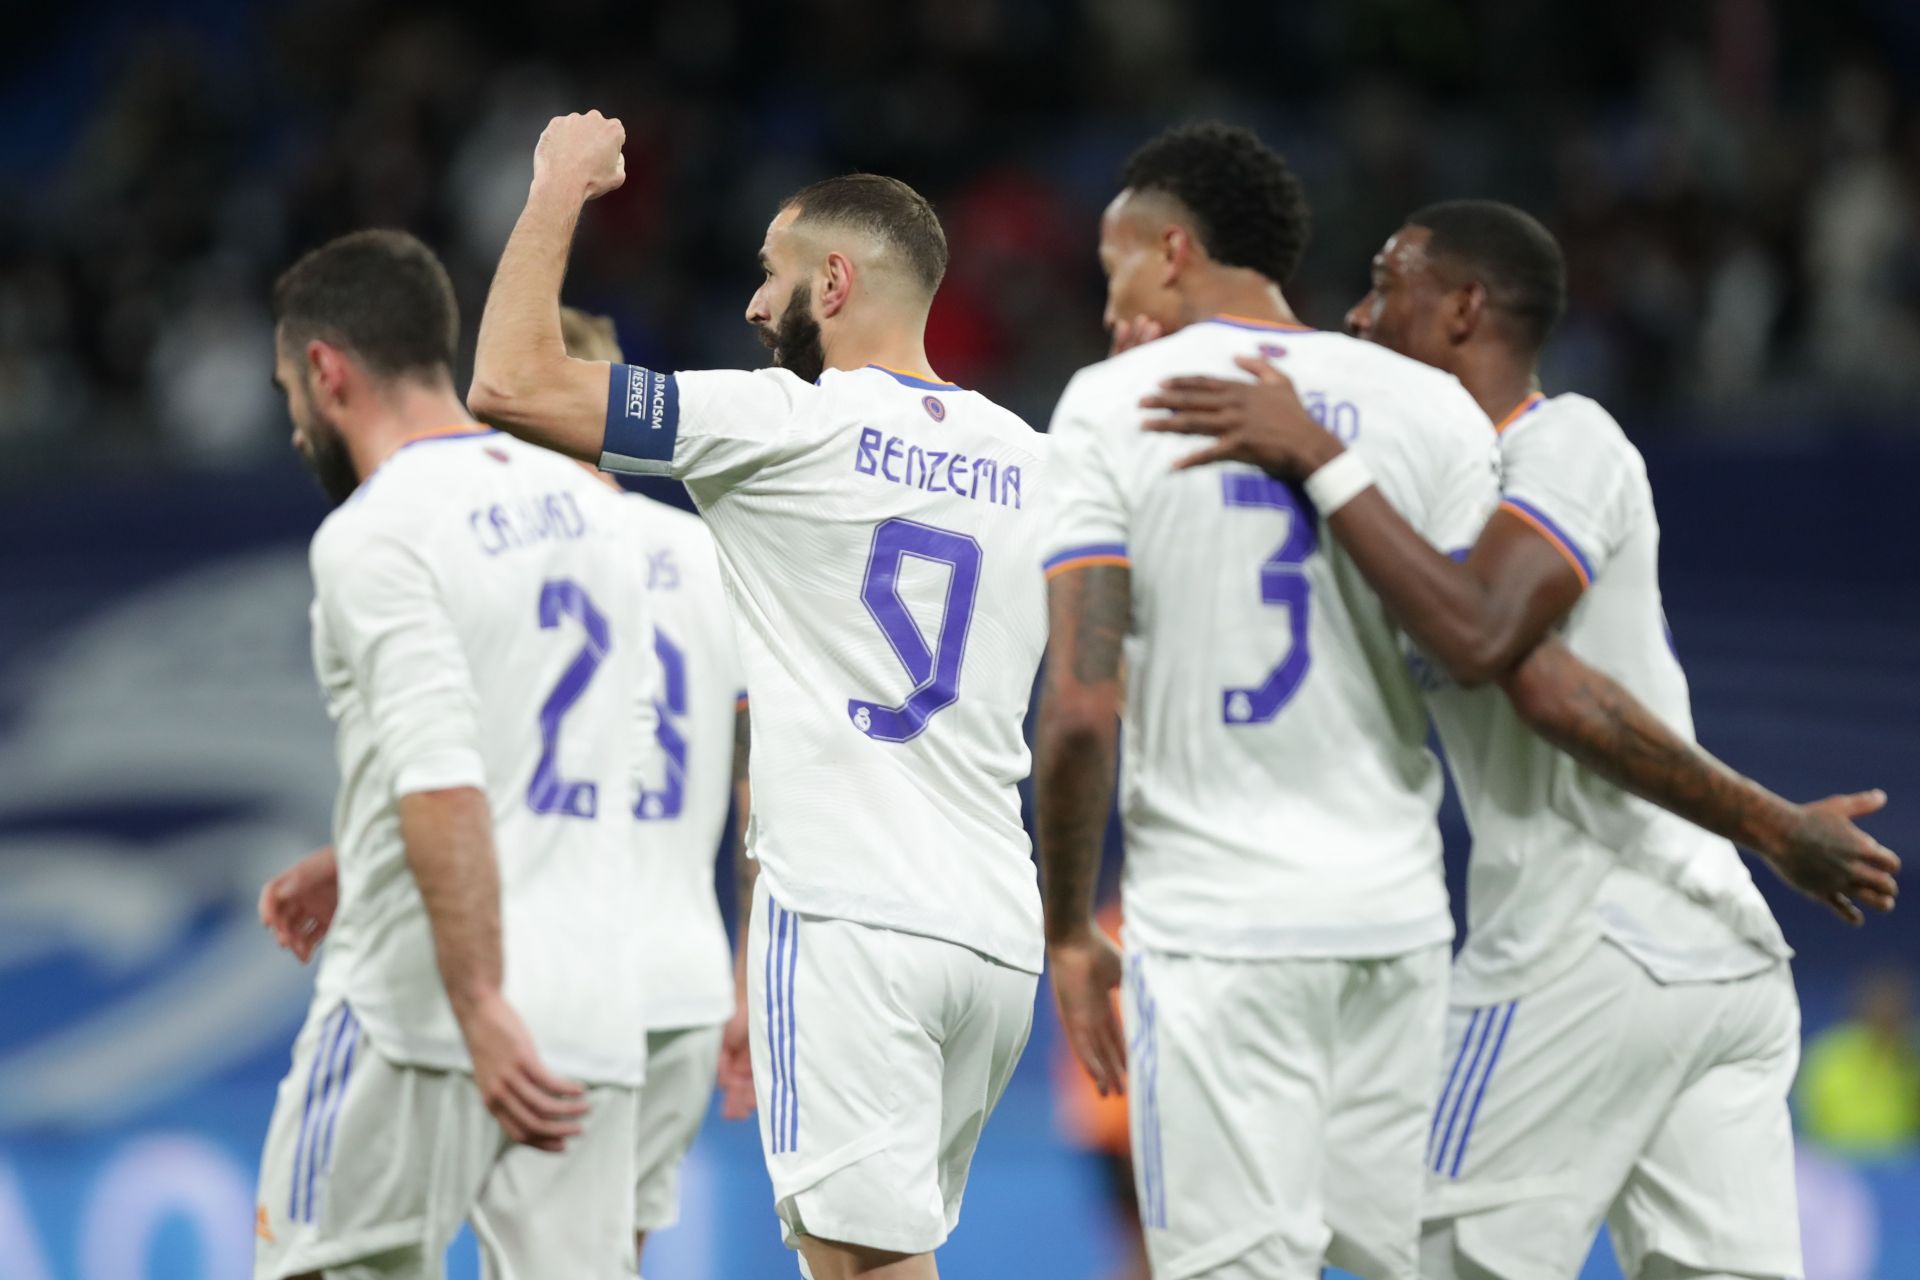 Real Madrid will host Sevilla on Sunday